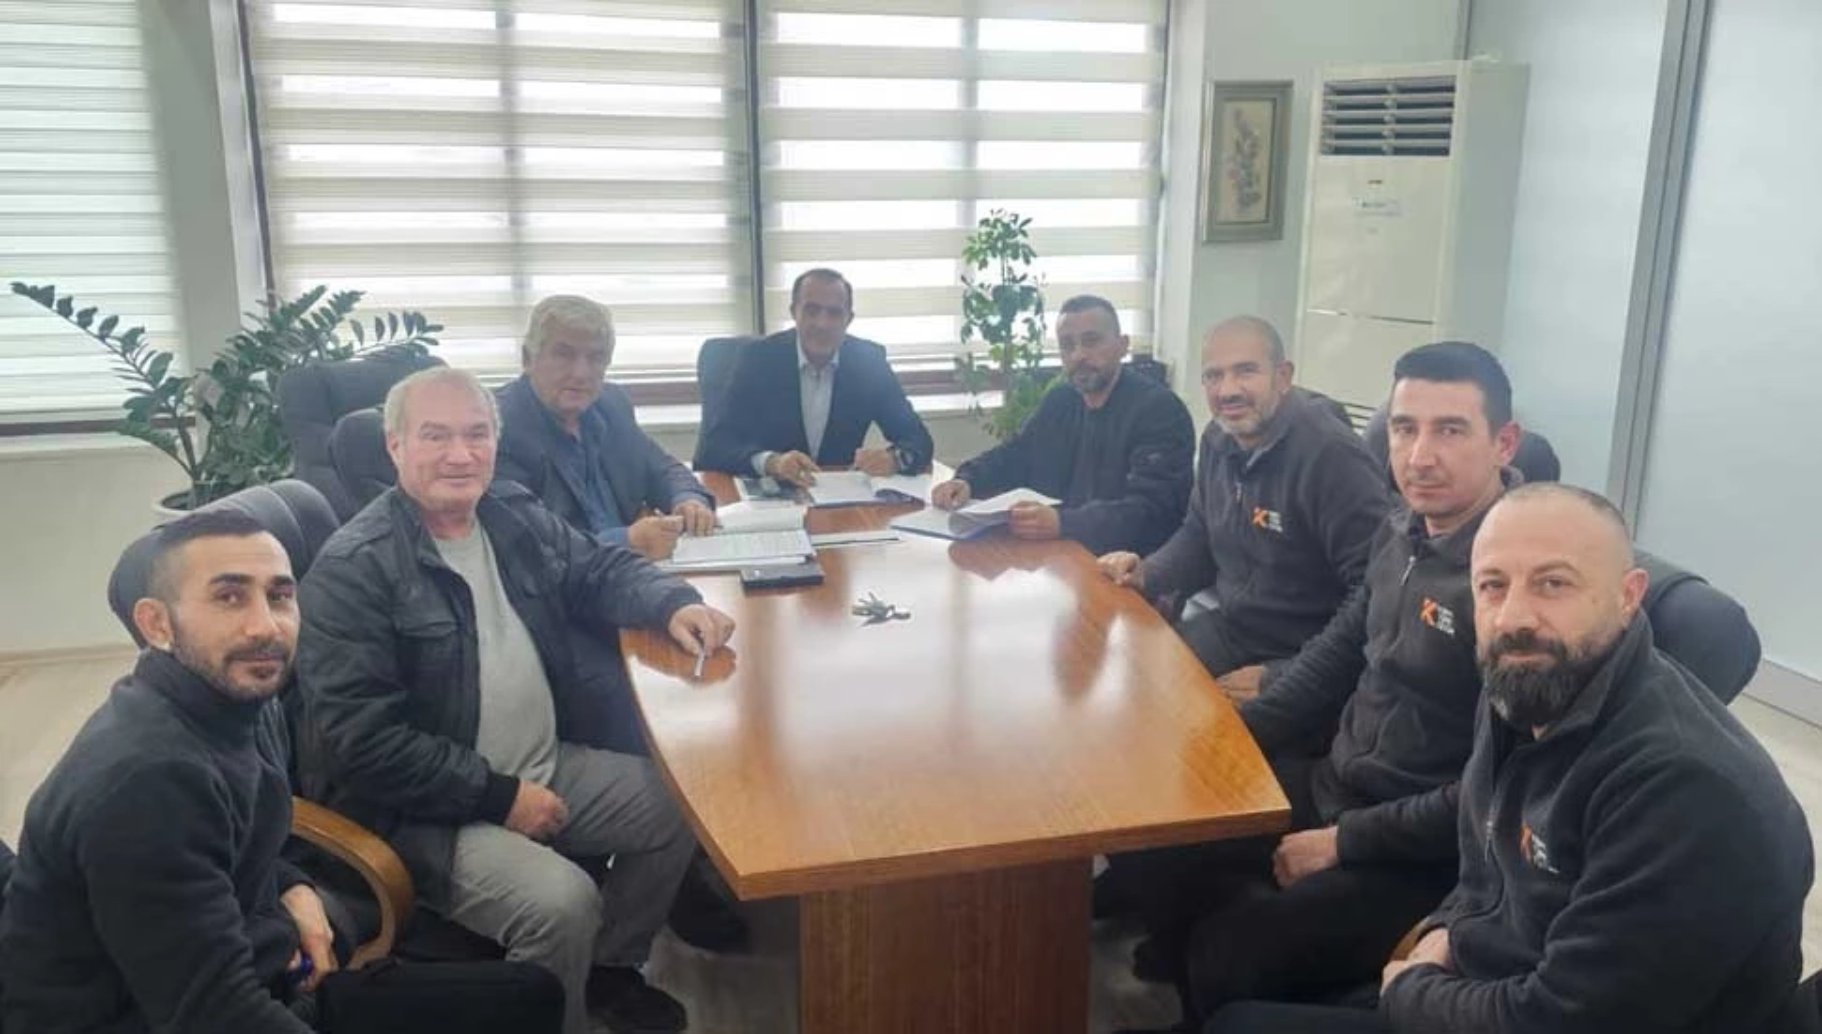 Kıbrıs Türk Tütün Endüstrisi’nde yeni dönem toplu iş sözleşmesi imzalandı